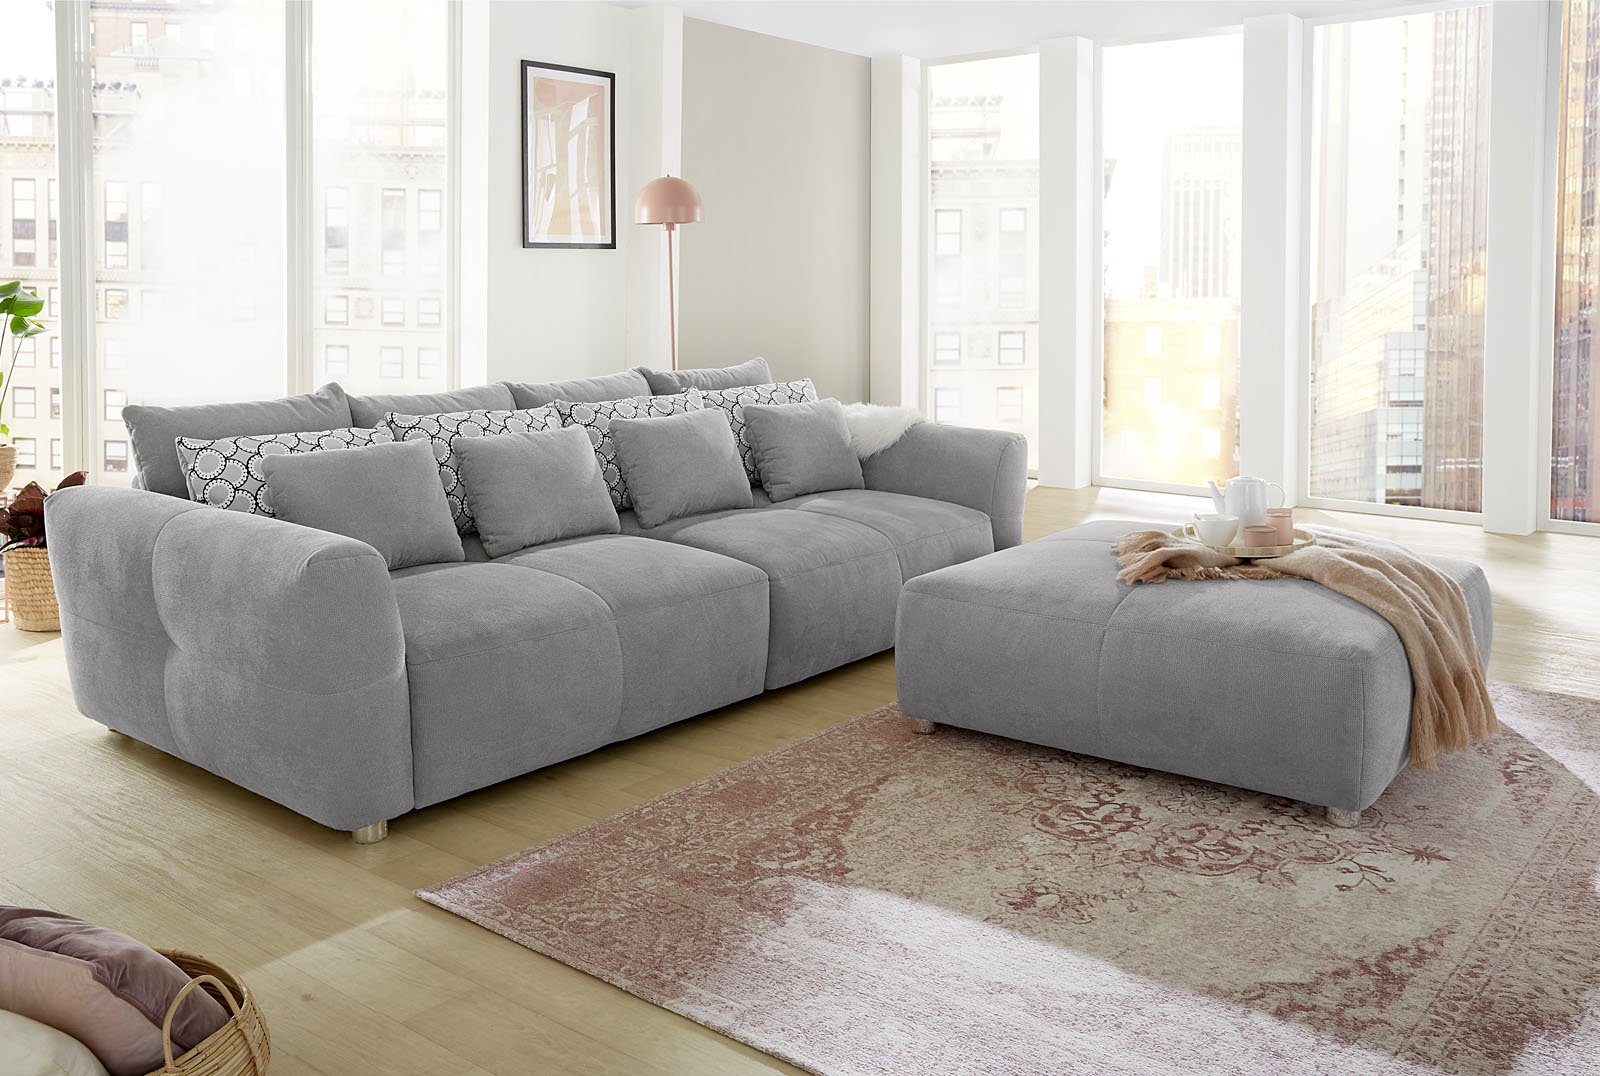 mit Jockenhöfer Gruppe angenehmen Sitzkomfort Big-Sofa für kuscheligen, hellgrau hellgrau | Gulliver, Federkernpolsterung